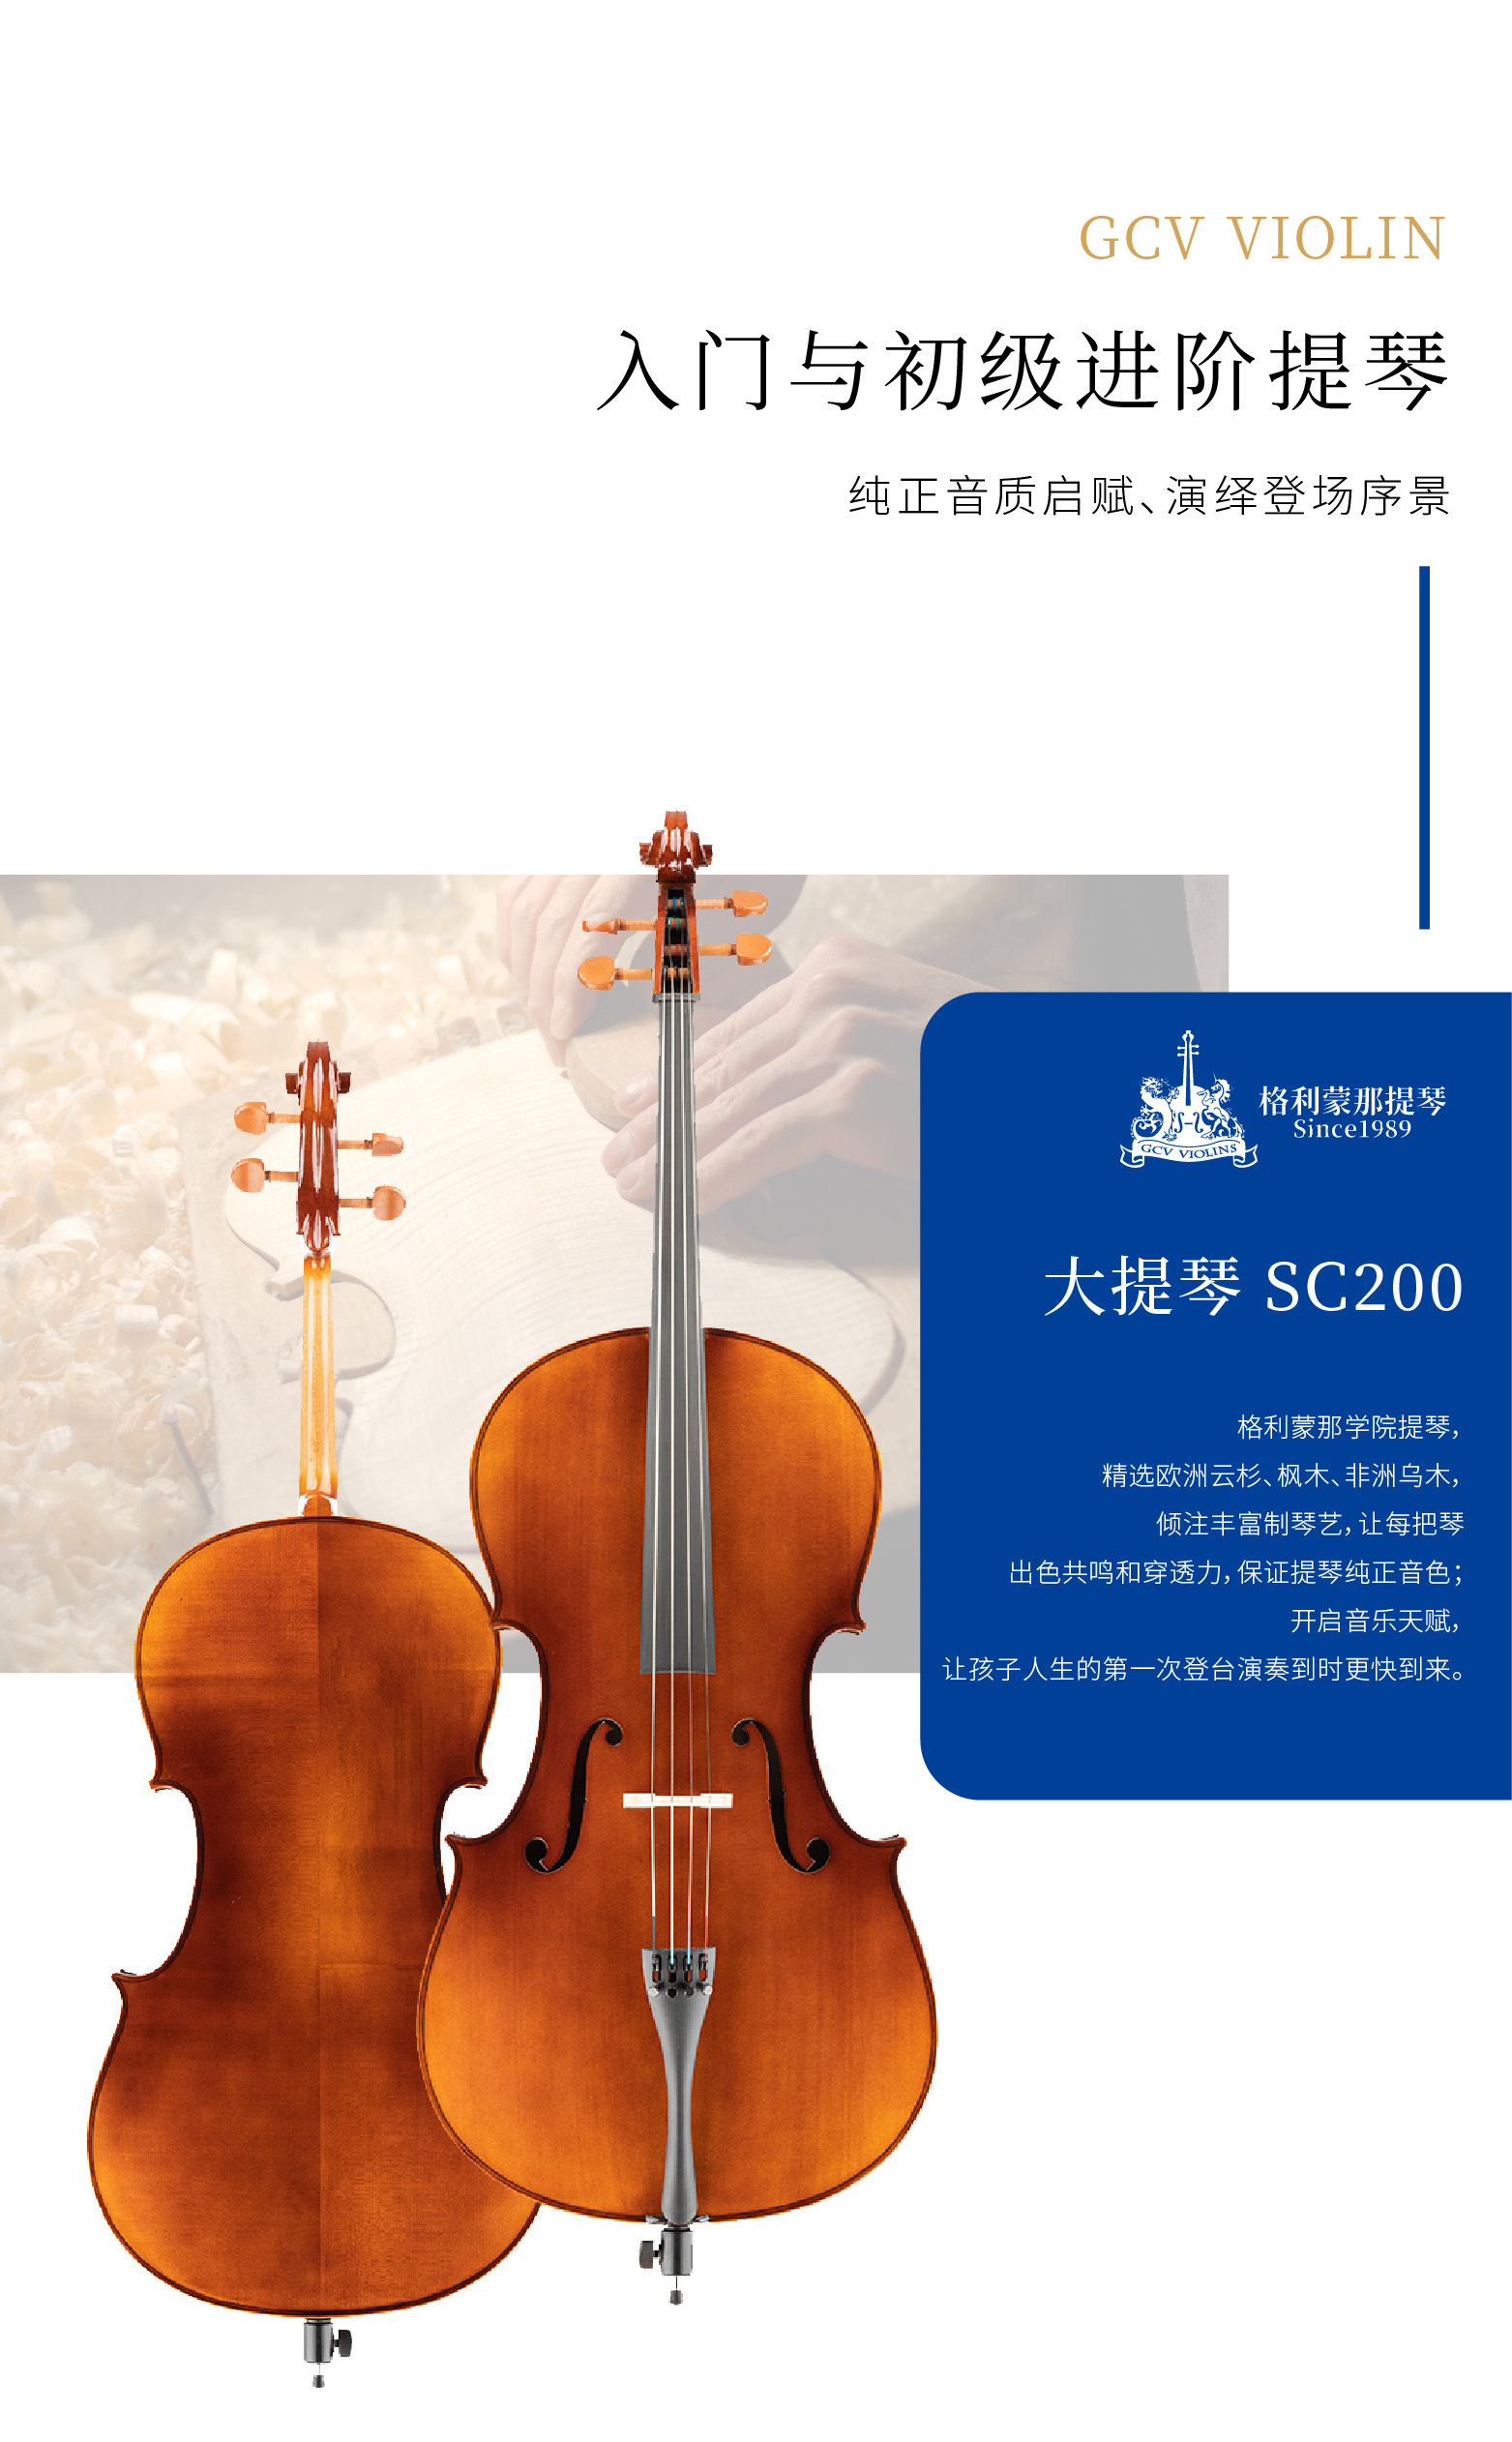 熙珑乐器专营店-详情-v1-2_SC200大提琴_复制_PC-副本-2_02.png